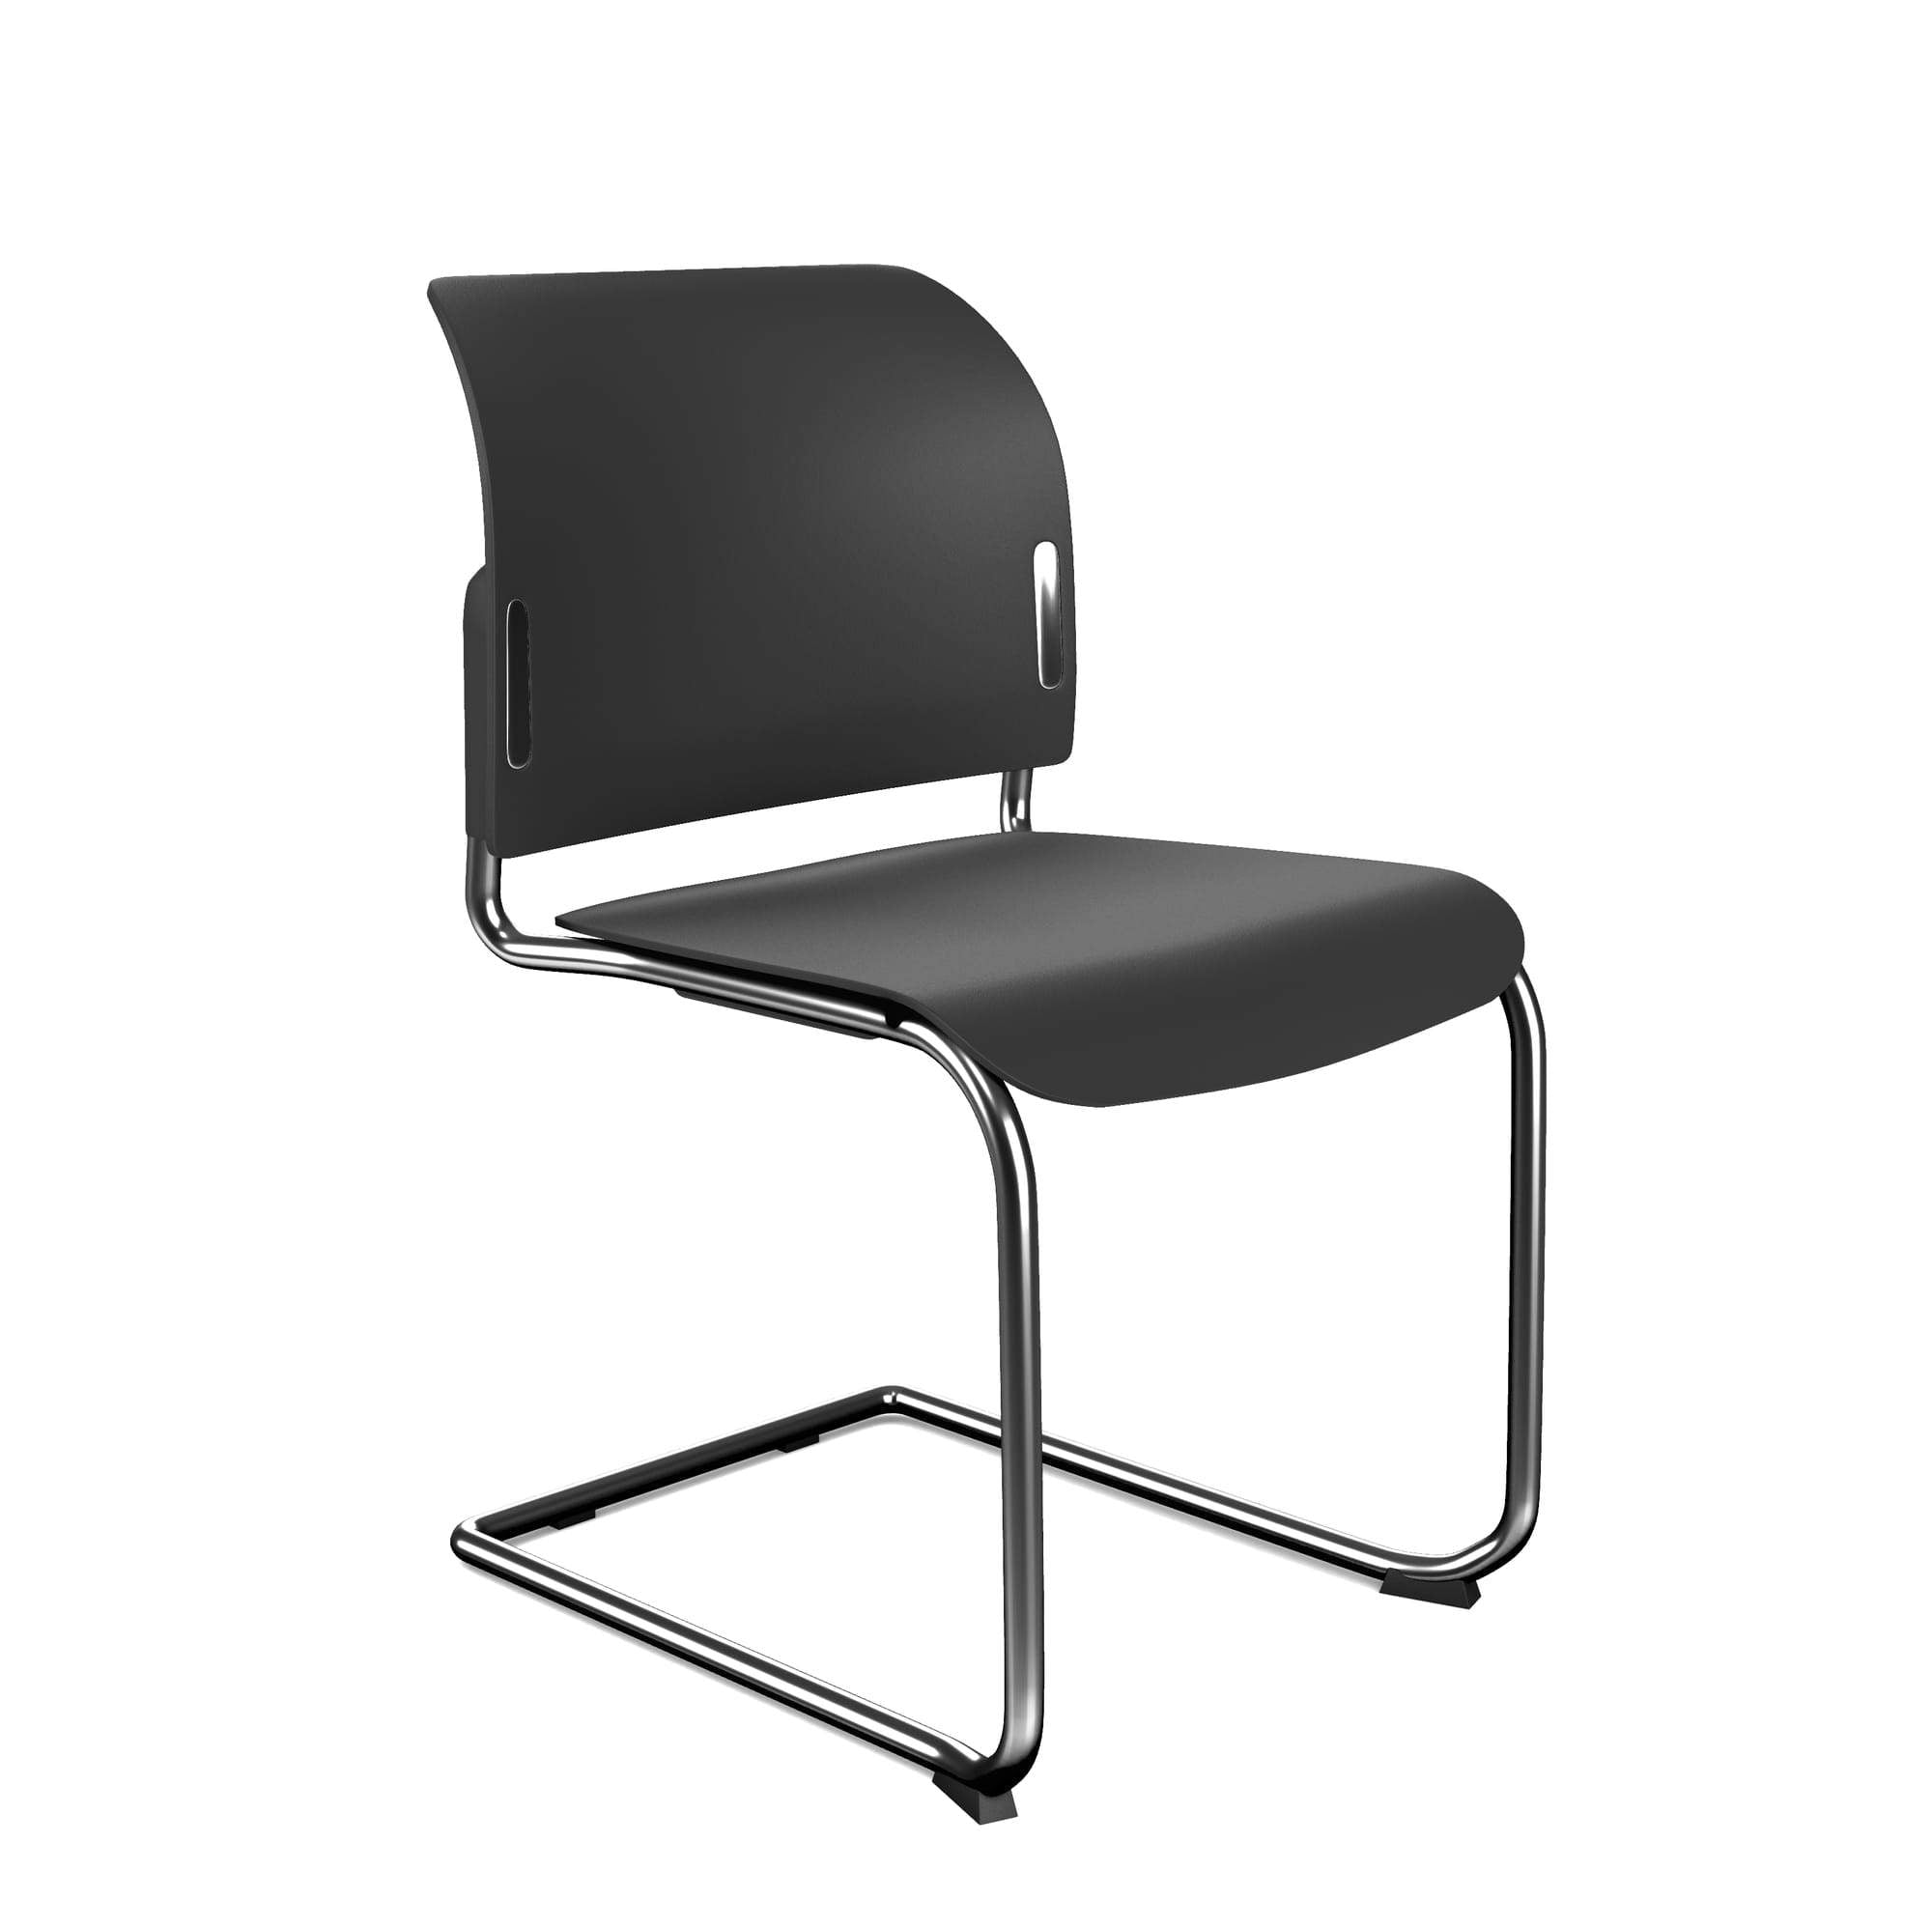 Bit Plastic Seat and Backrest Chair, Cantilever Frame - Model 550V